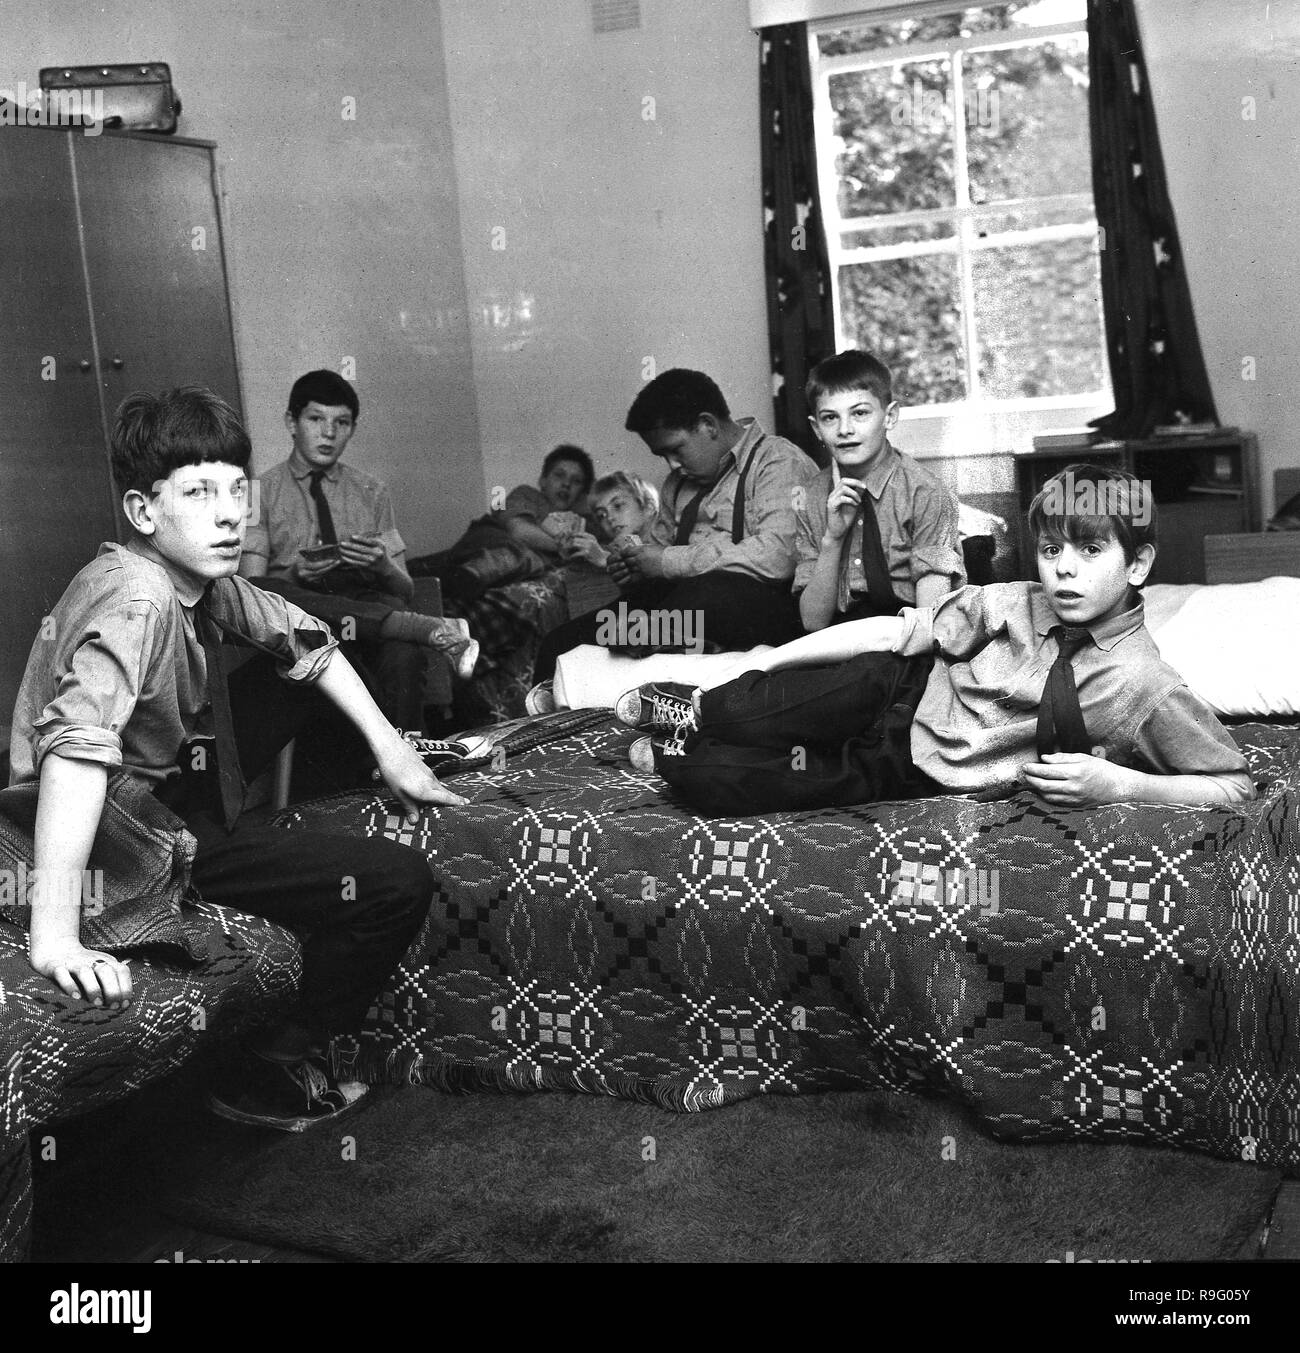 1968, South London und einen jungen Internat, Bild zeigt eine Gruppe von britischen Schüler in ihre Uniform sitzen zusammen in ihren Schlafsaal oder Schlafbereich, England, UK. Stockfoto